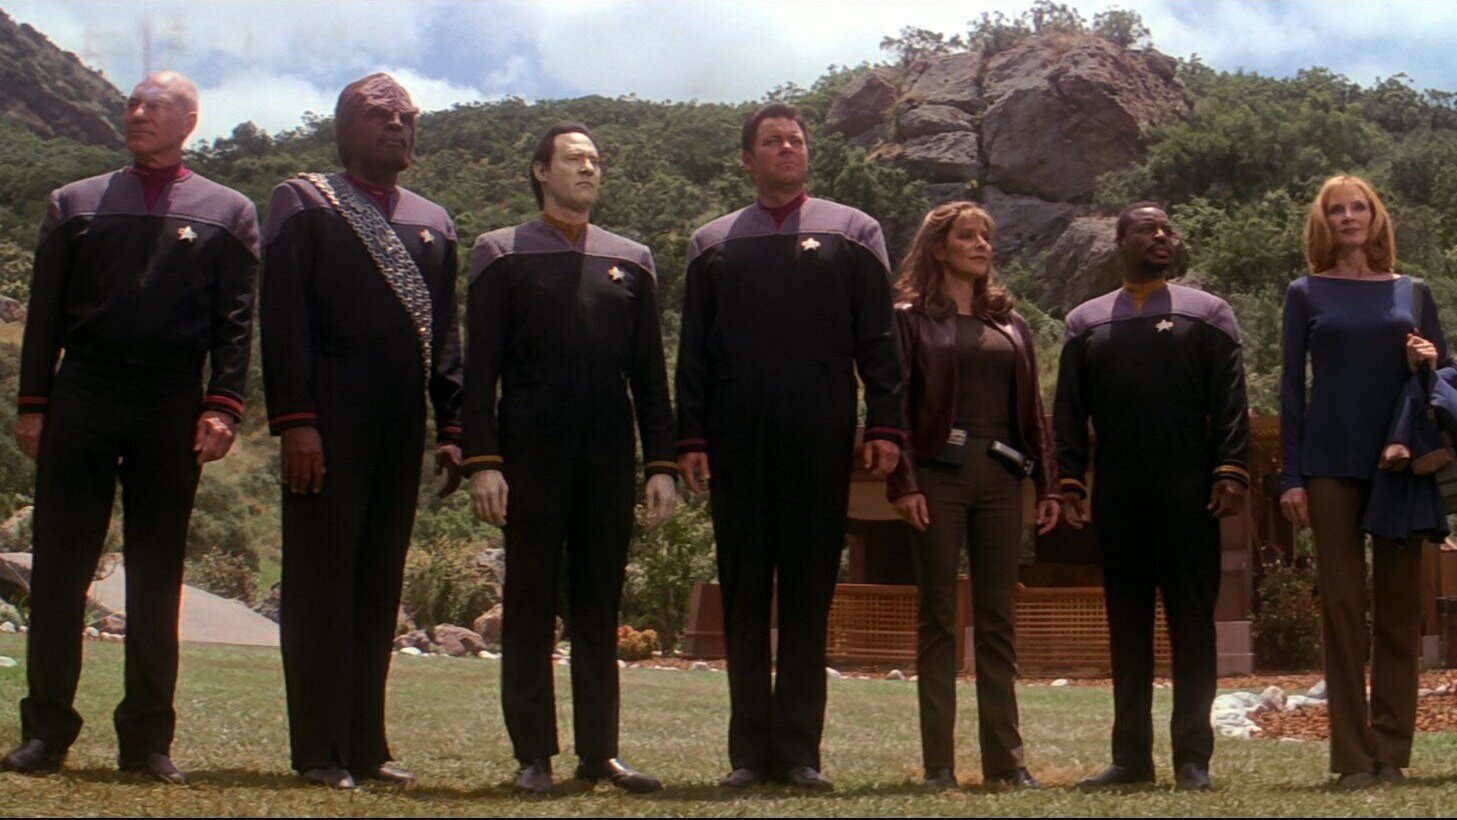 Feb 8 Trek Film Society: Episode 9 - Star Trek: Insurrection.